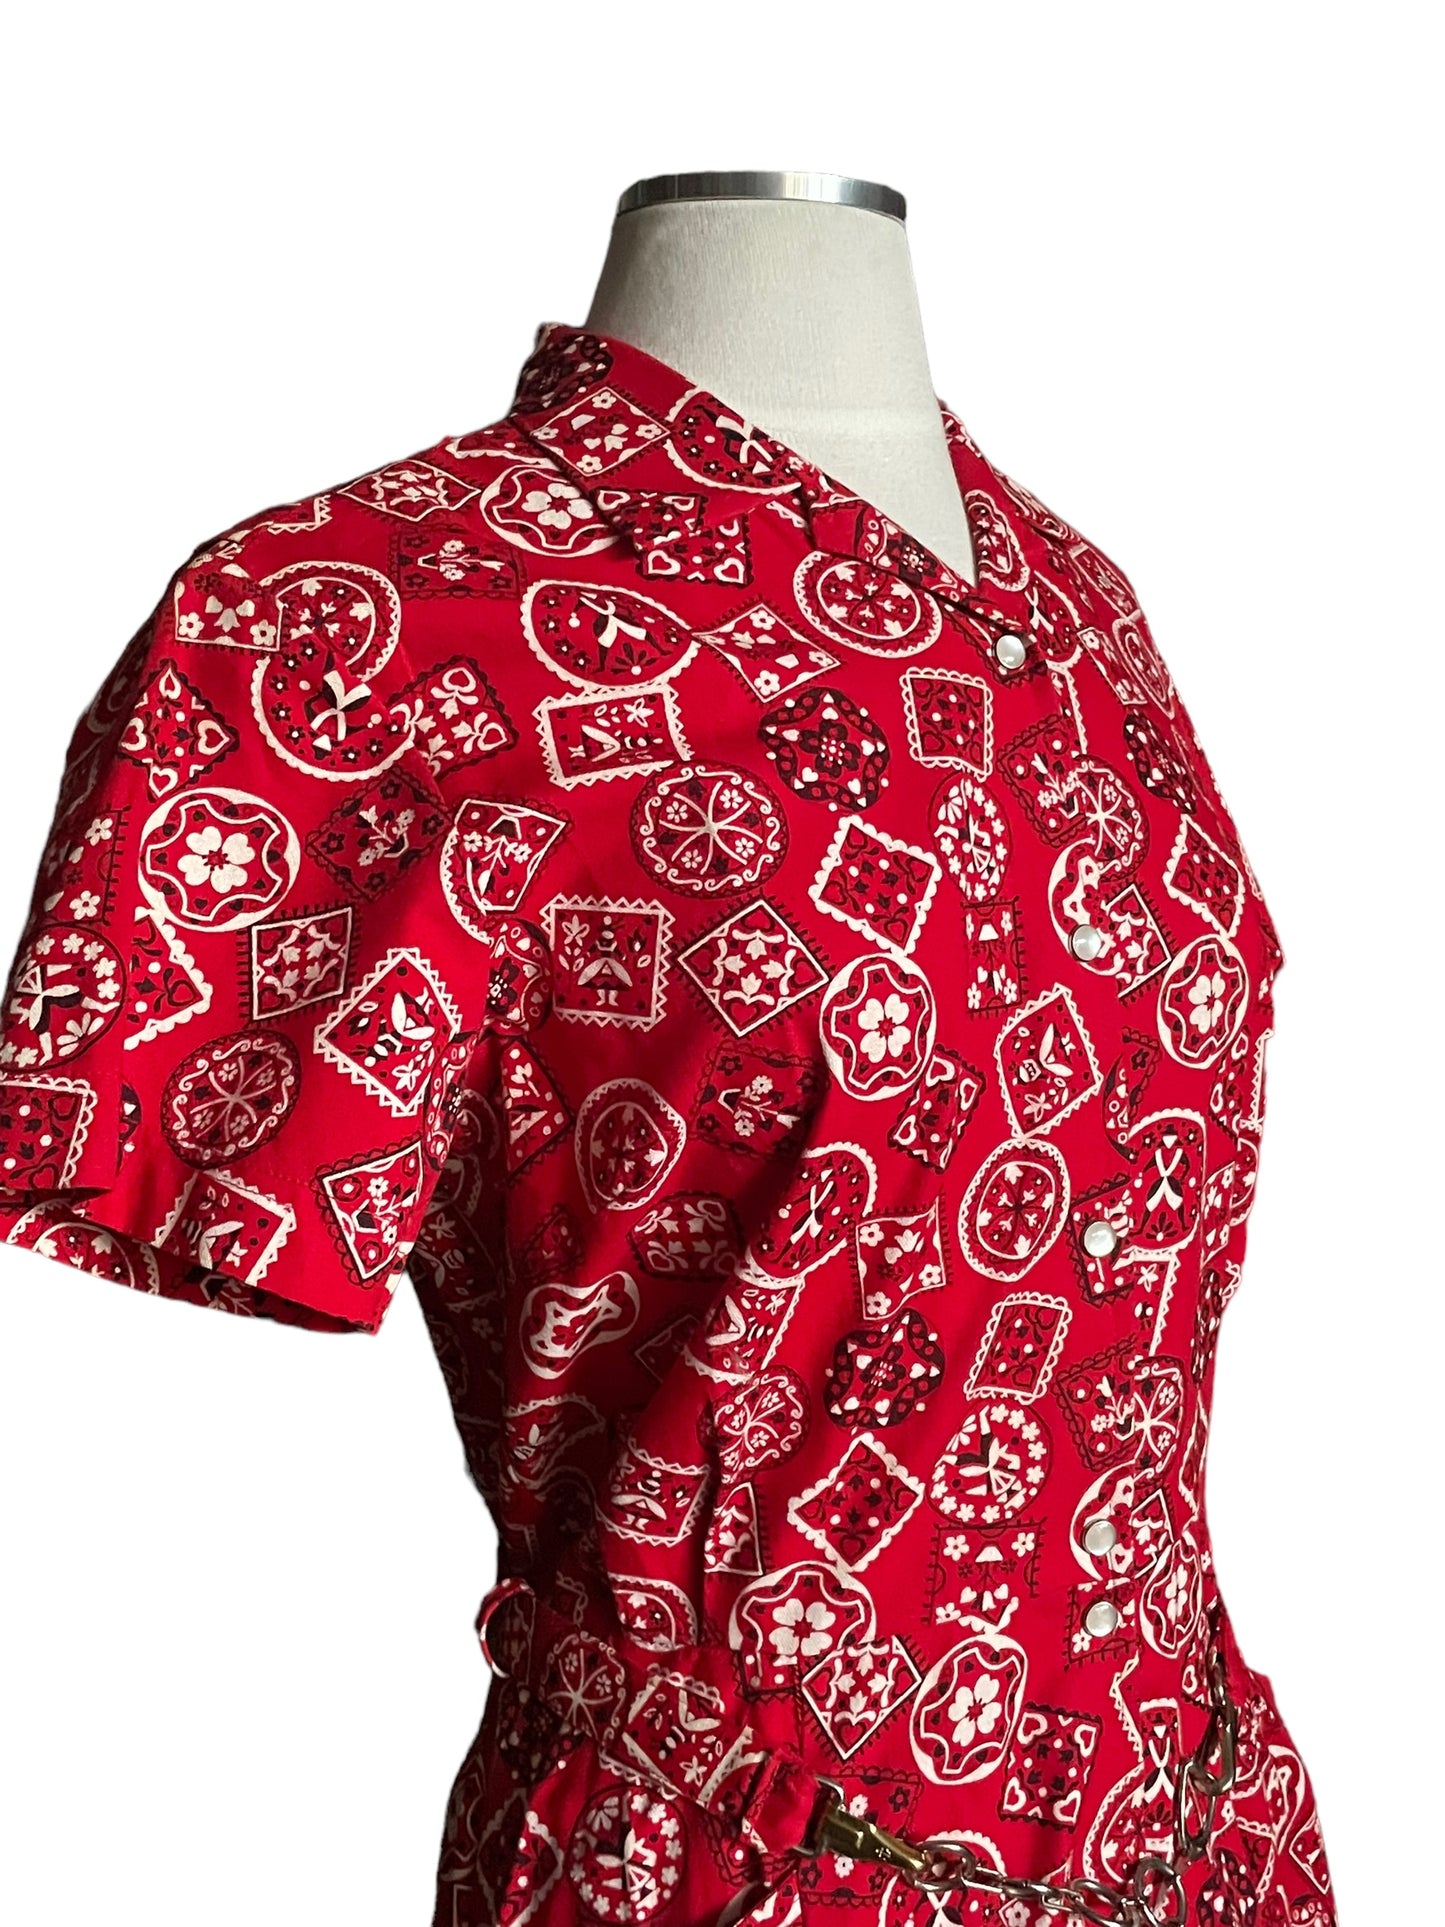 Right shoulder view of Vintage Tregos Red Bandana Dress SZ S |  Barn Owl Vintage Dresses| Seattle Vintage Dresses